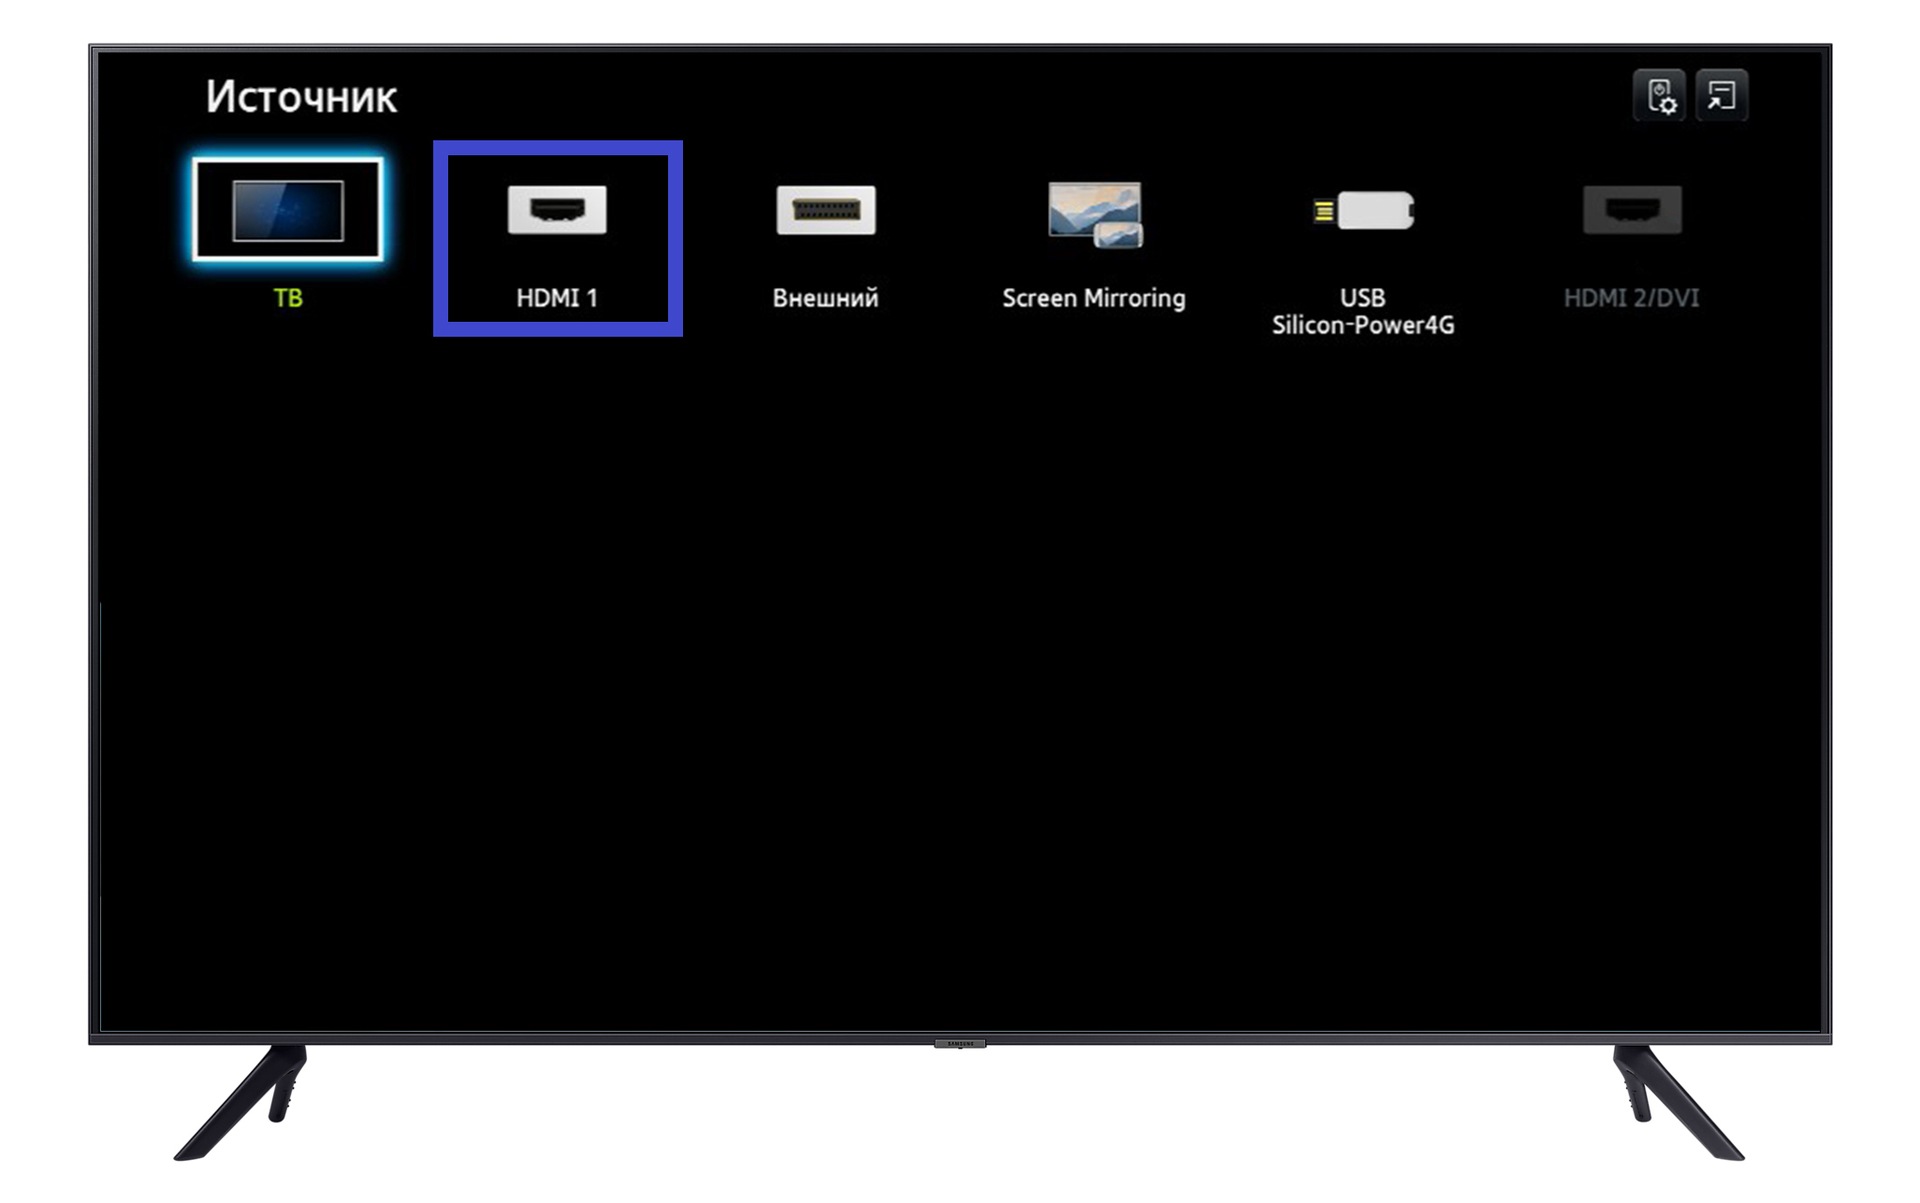 Выбор HDMI-порта